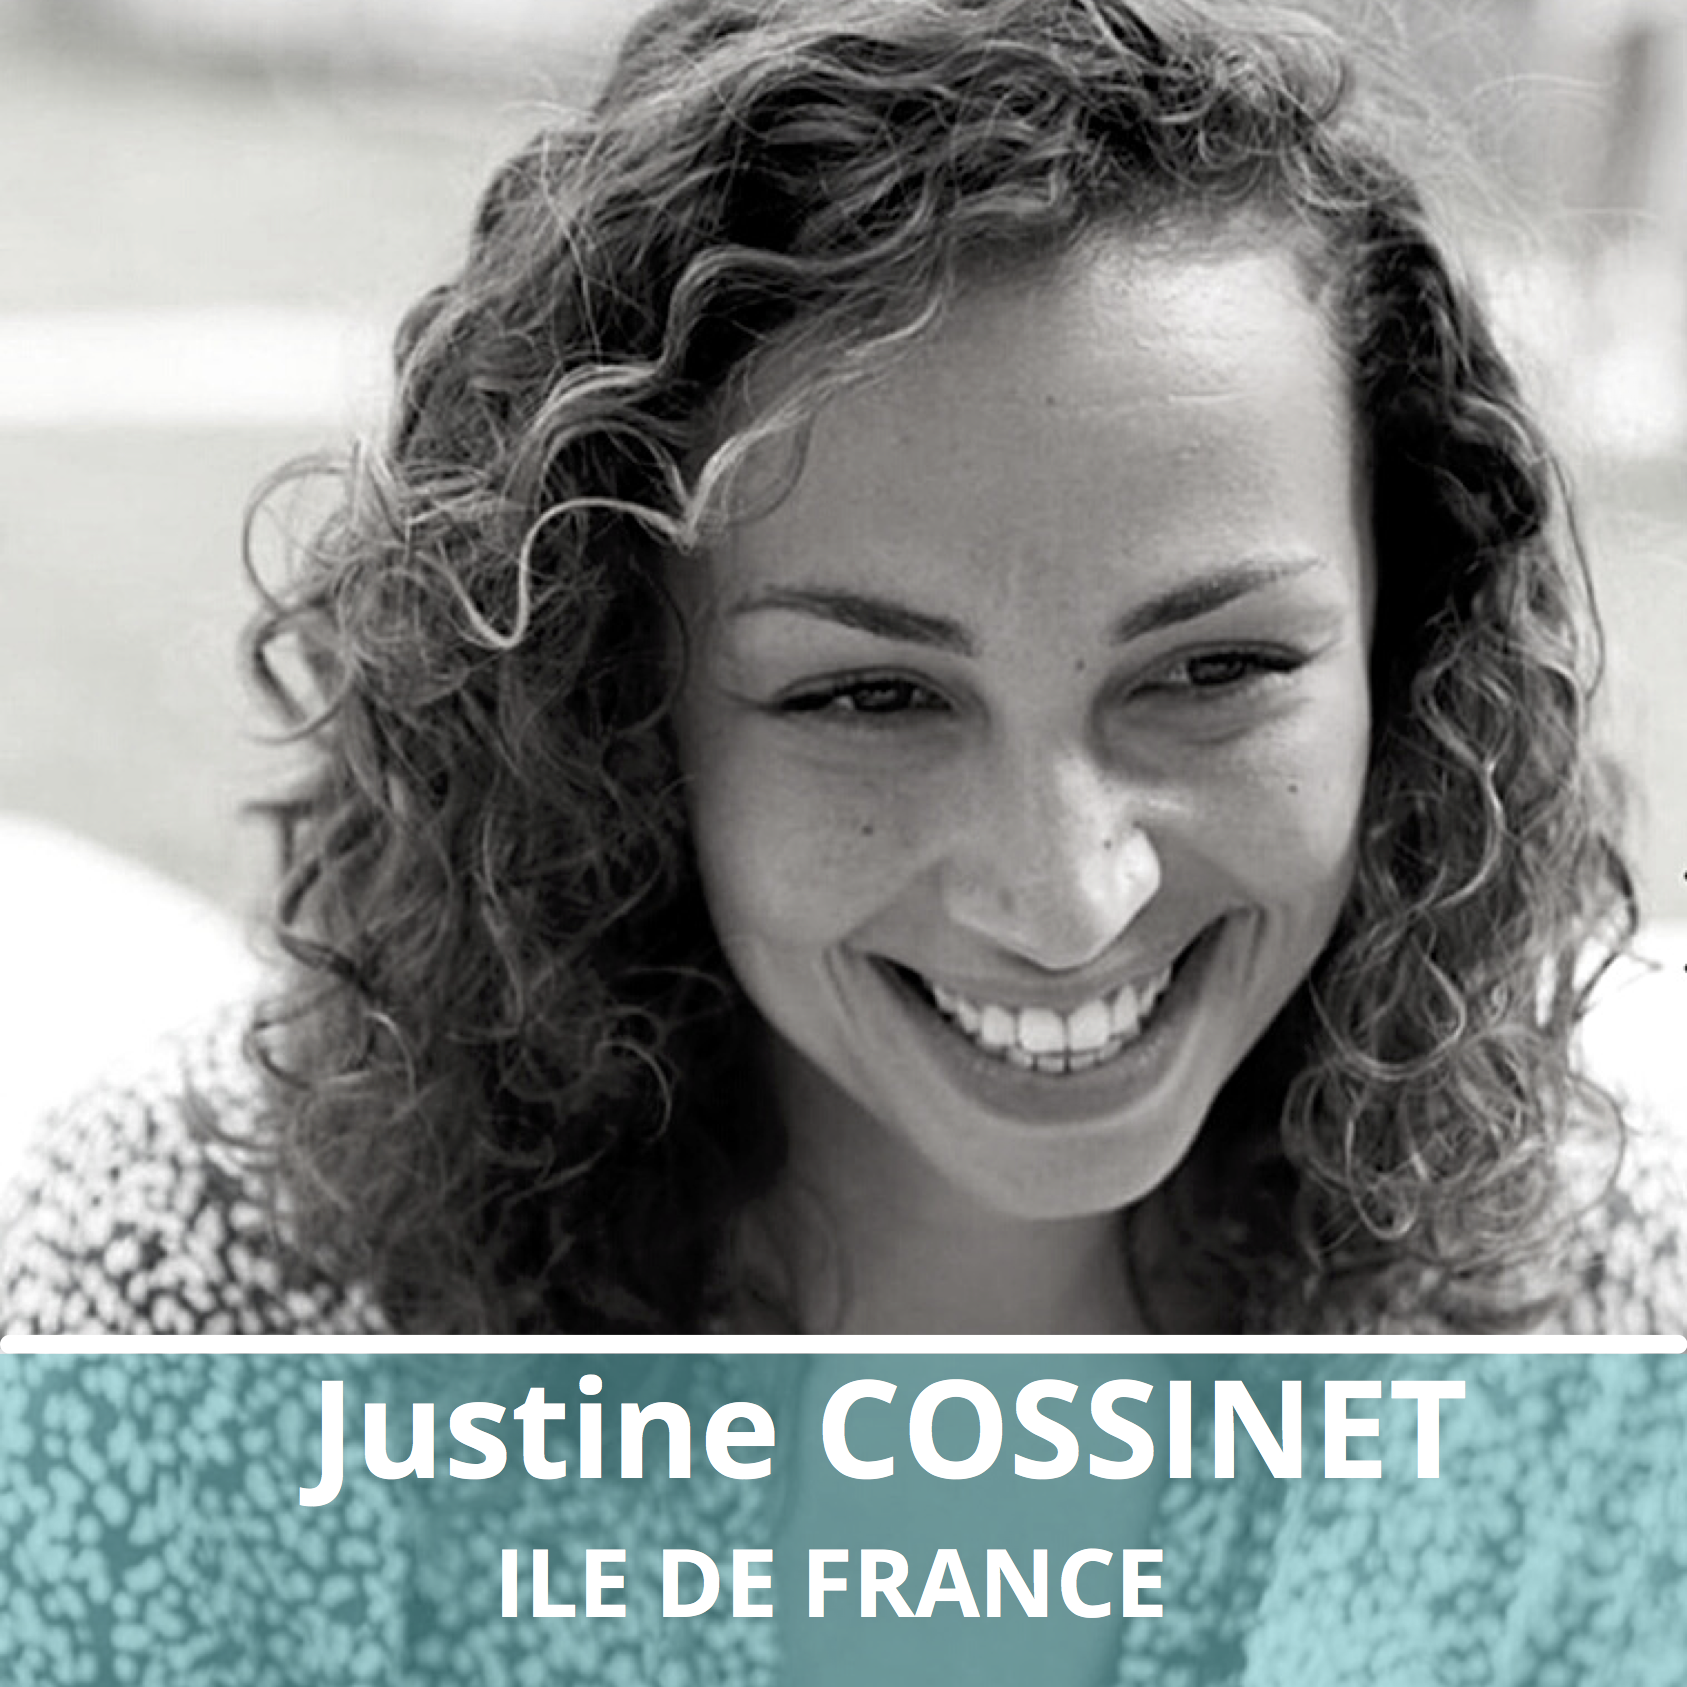 Justine COSSINET